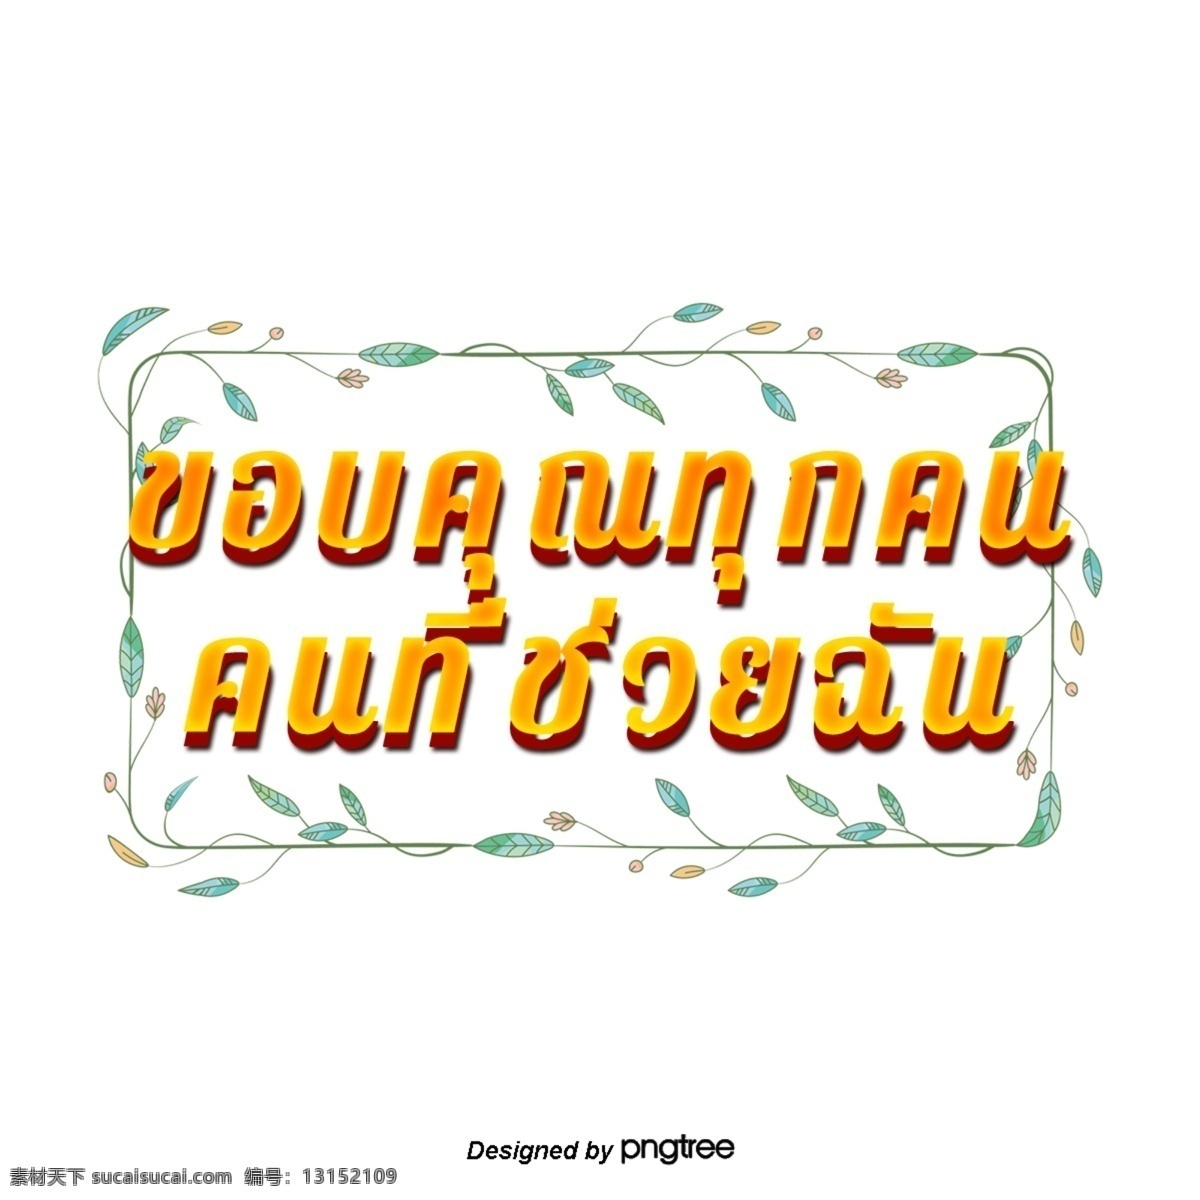 泰国 字母 字体 橙色 正方形 绿色 花 谢谢 大家 帮助 矩形